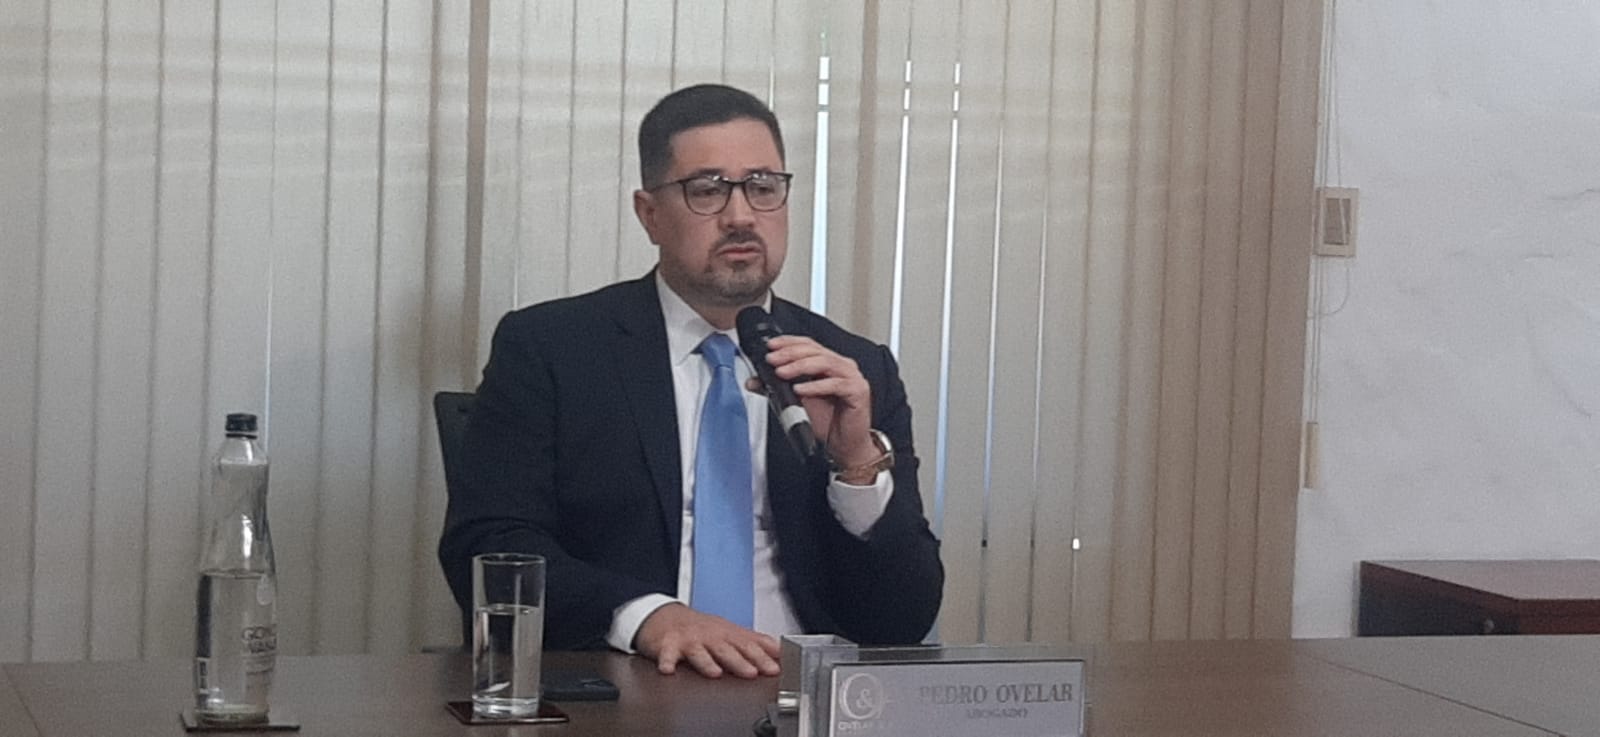 Pedro Ovelar, abogado de Tabesa, durante la conferencia de prensa. Foto: 1000 AM